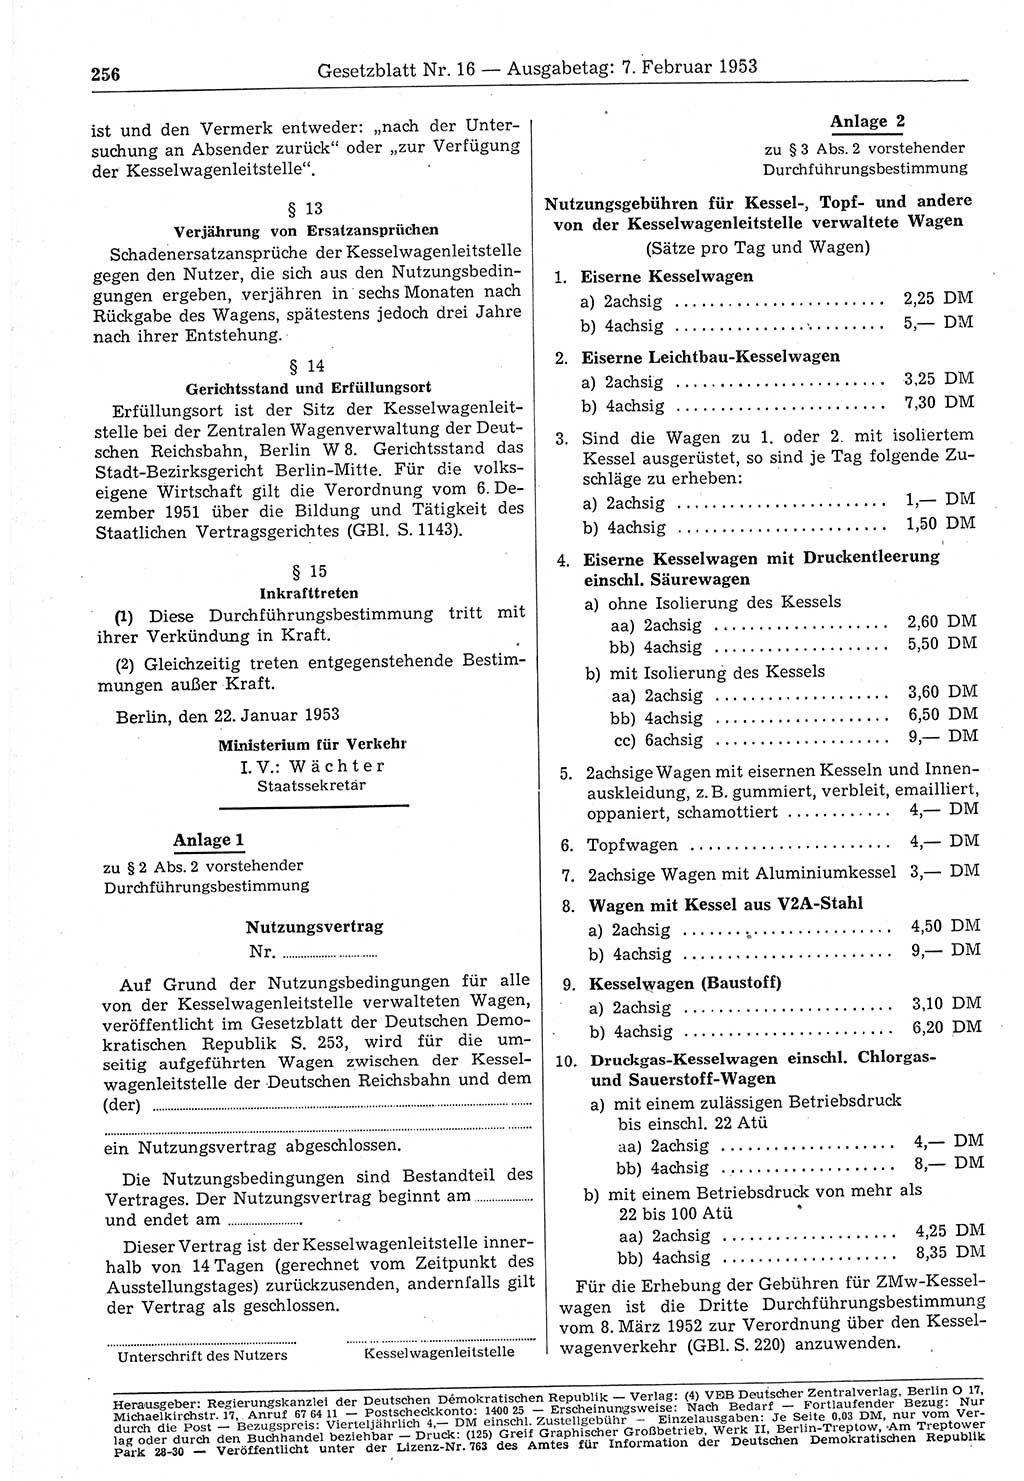 Gesetzblatt (GBl.) der Deutschen Demokratischen Republik (DDR) 1953, Seite 256 (GBl. DDR 1953, S. 256)